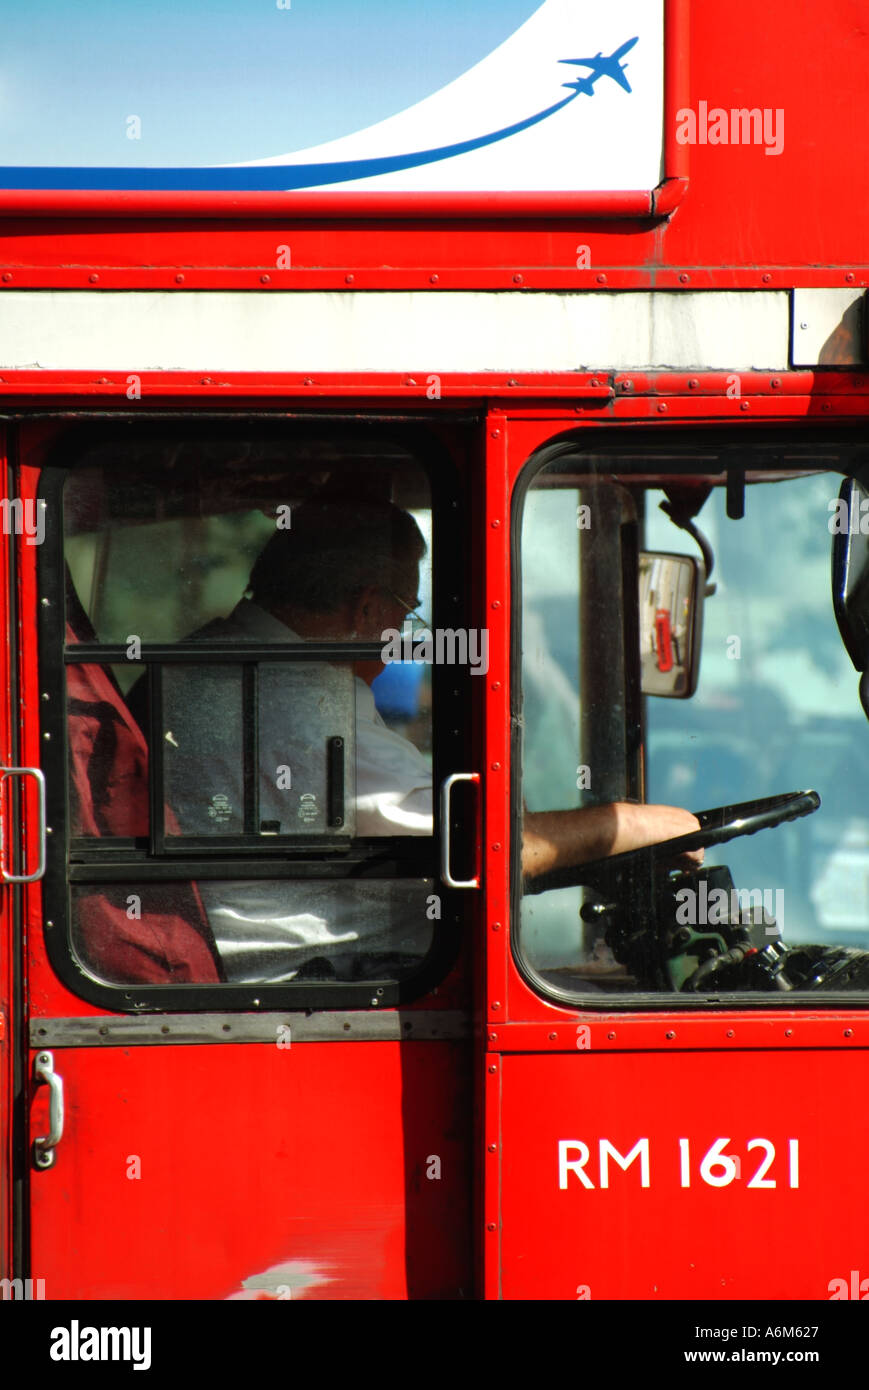 Vue rapprochée du conducteur en taxi homme au travail, conduite classique à impériale rouge historique Londres transport Routemaster bus Angleterre Royaume-Uni Banque D'Images